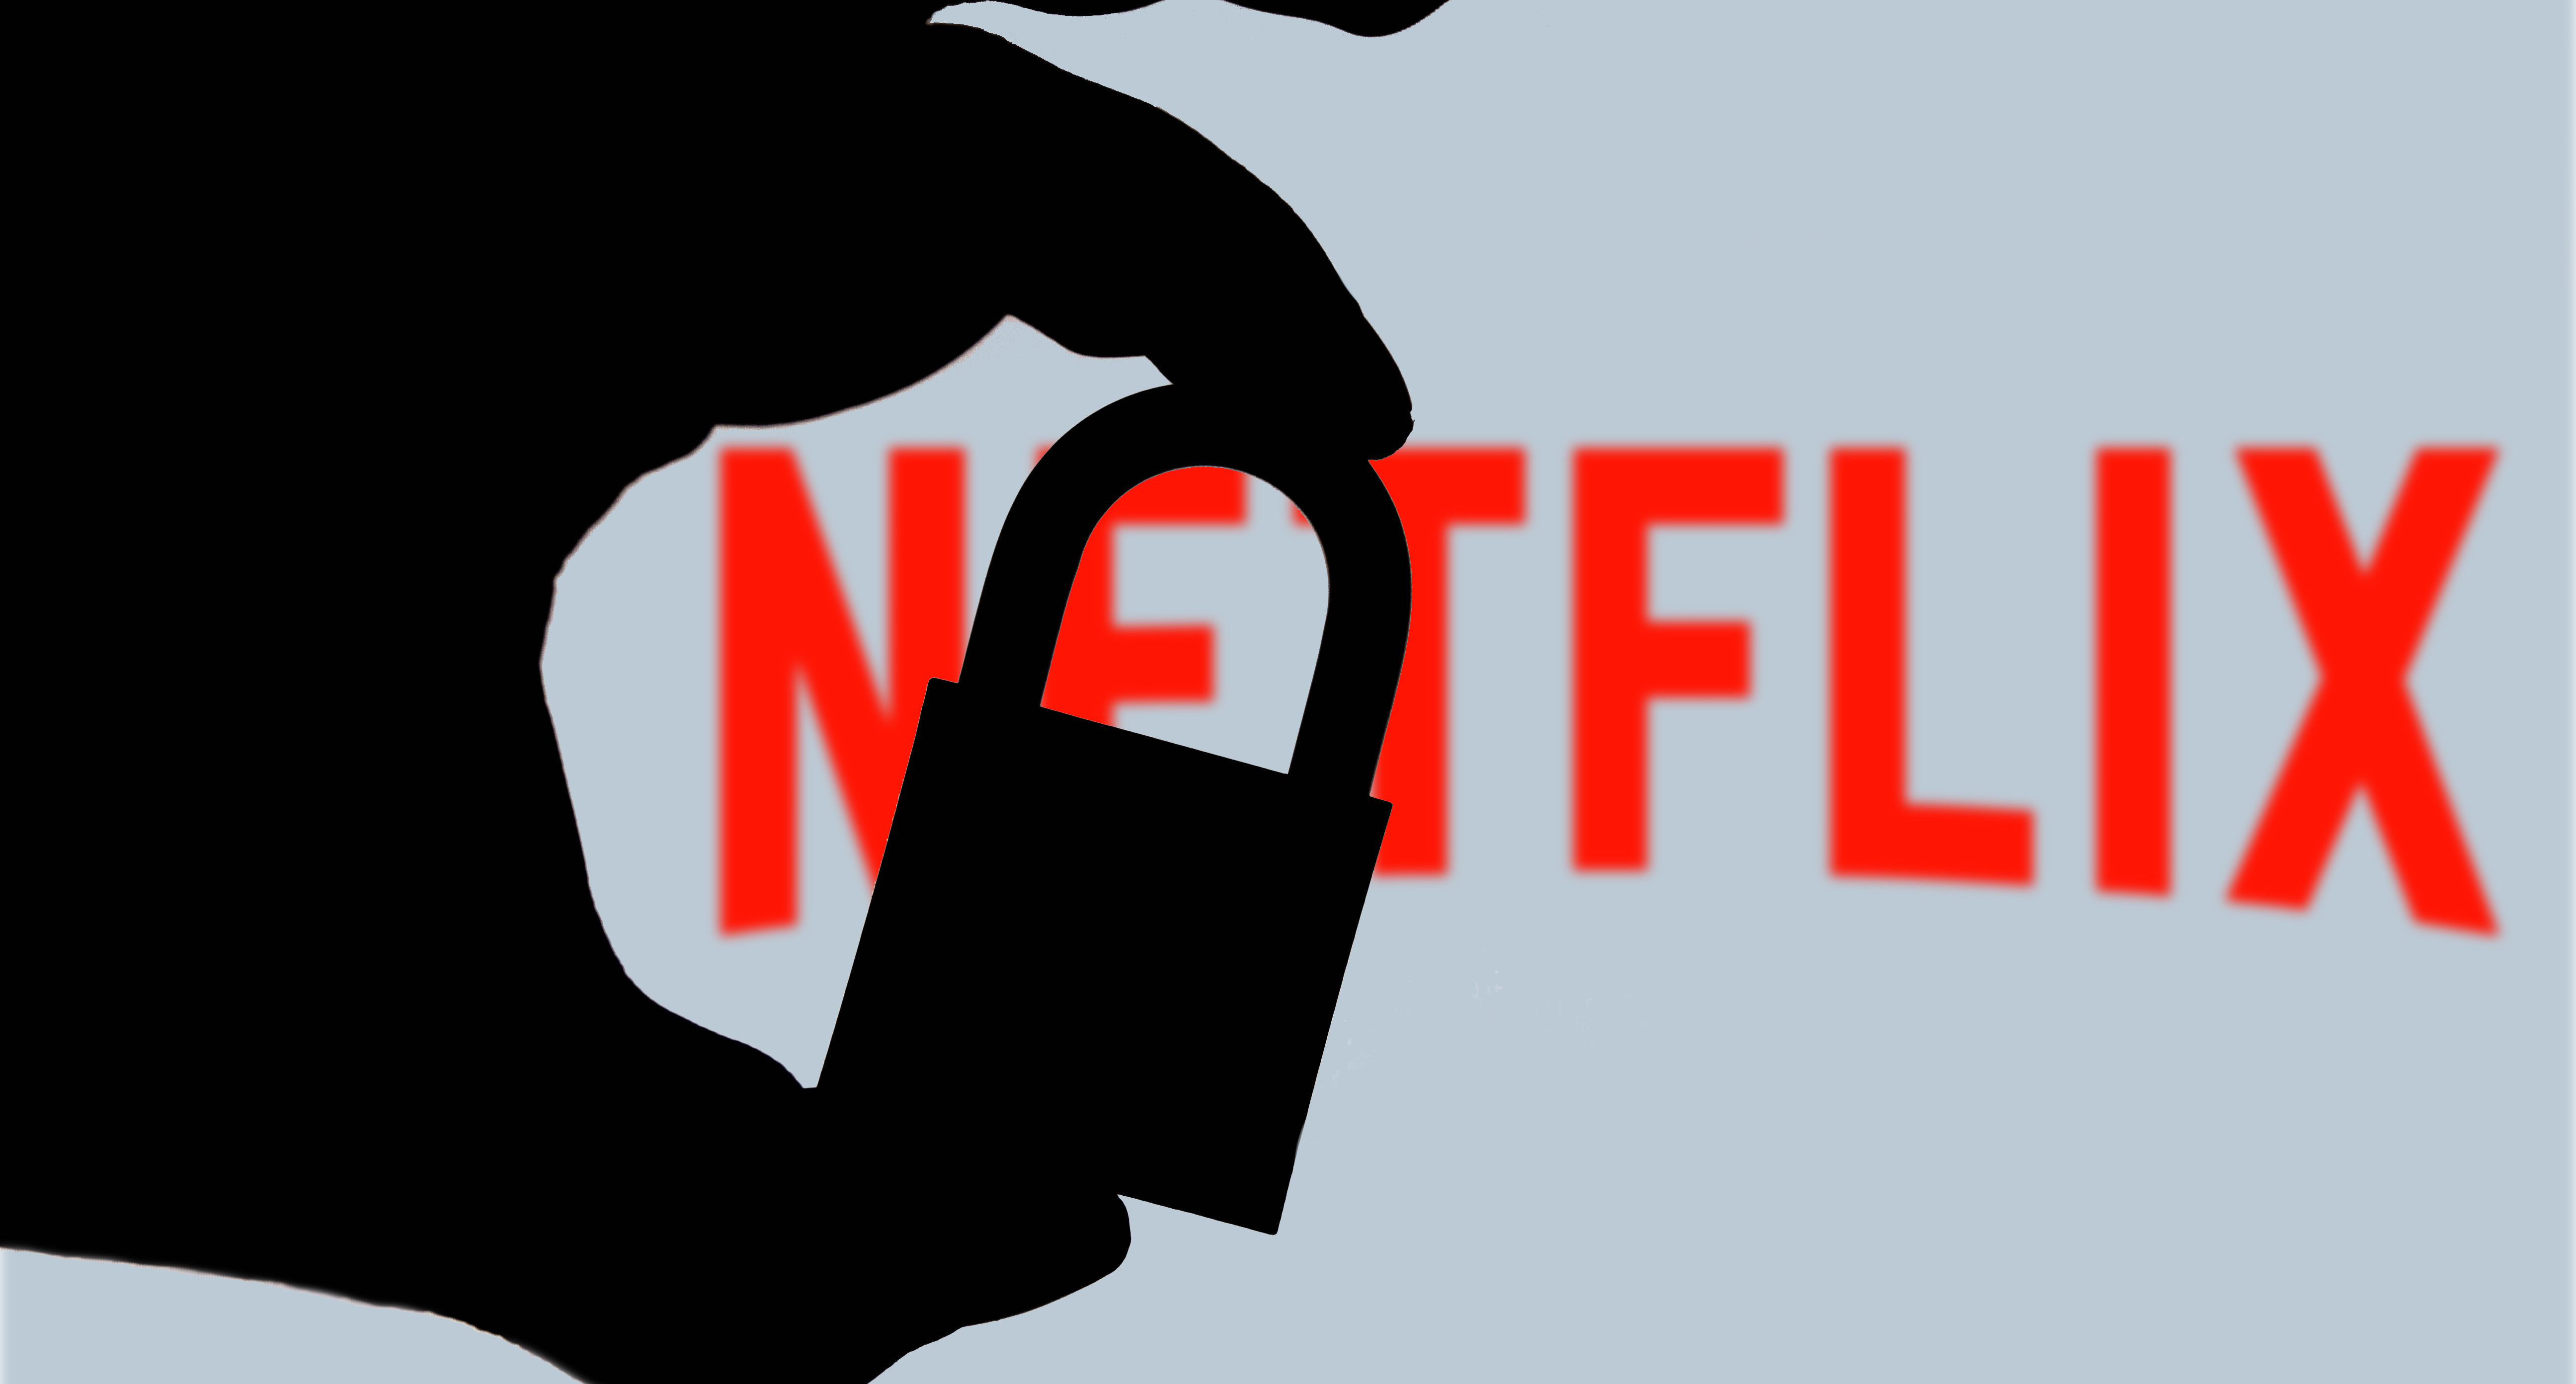 Foto] Netflix: Revelan códigos secretos para ver el contenido